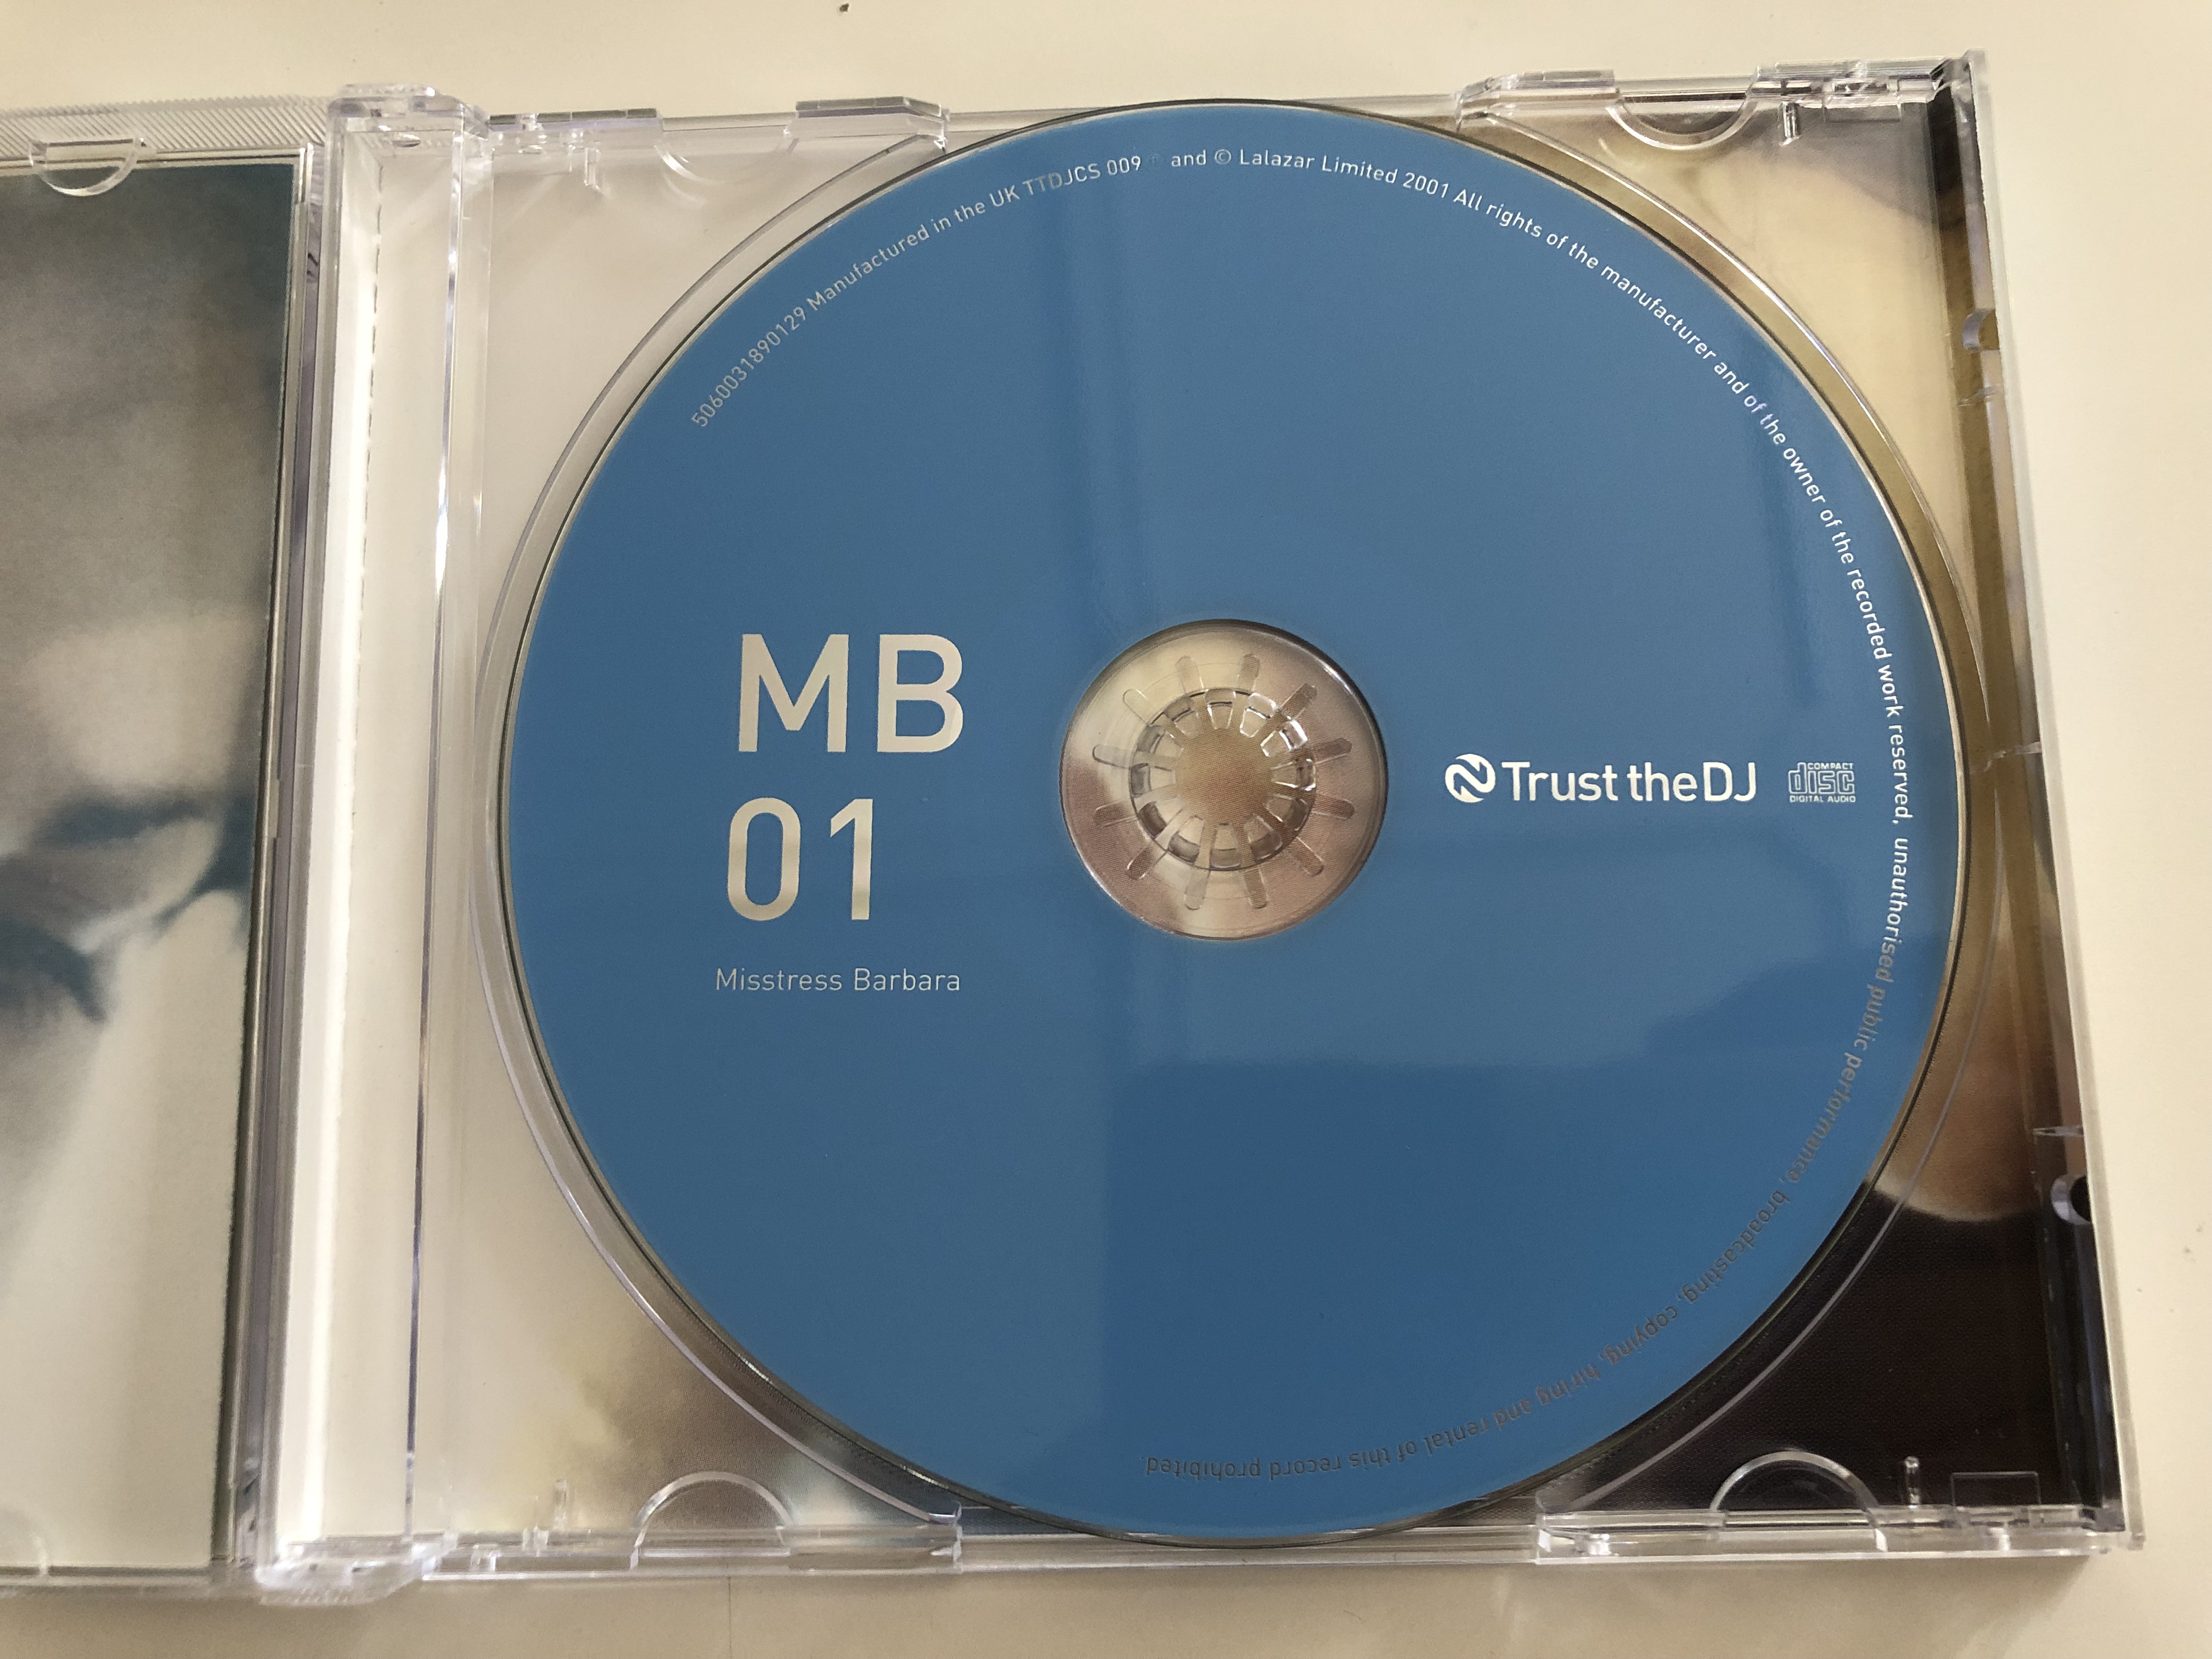 mistress-barbara-mb-01-trust-the-dj-audio-cd-2001-lalazar-ltd-4-.jpg